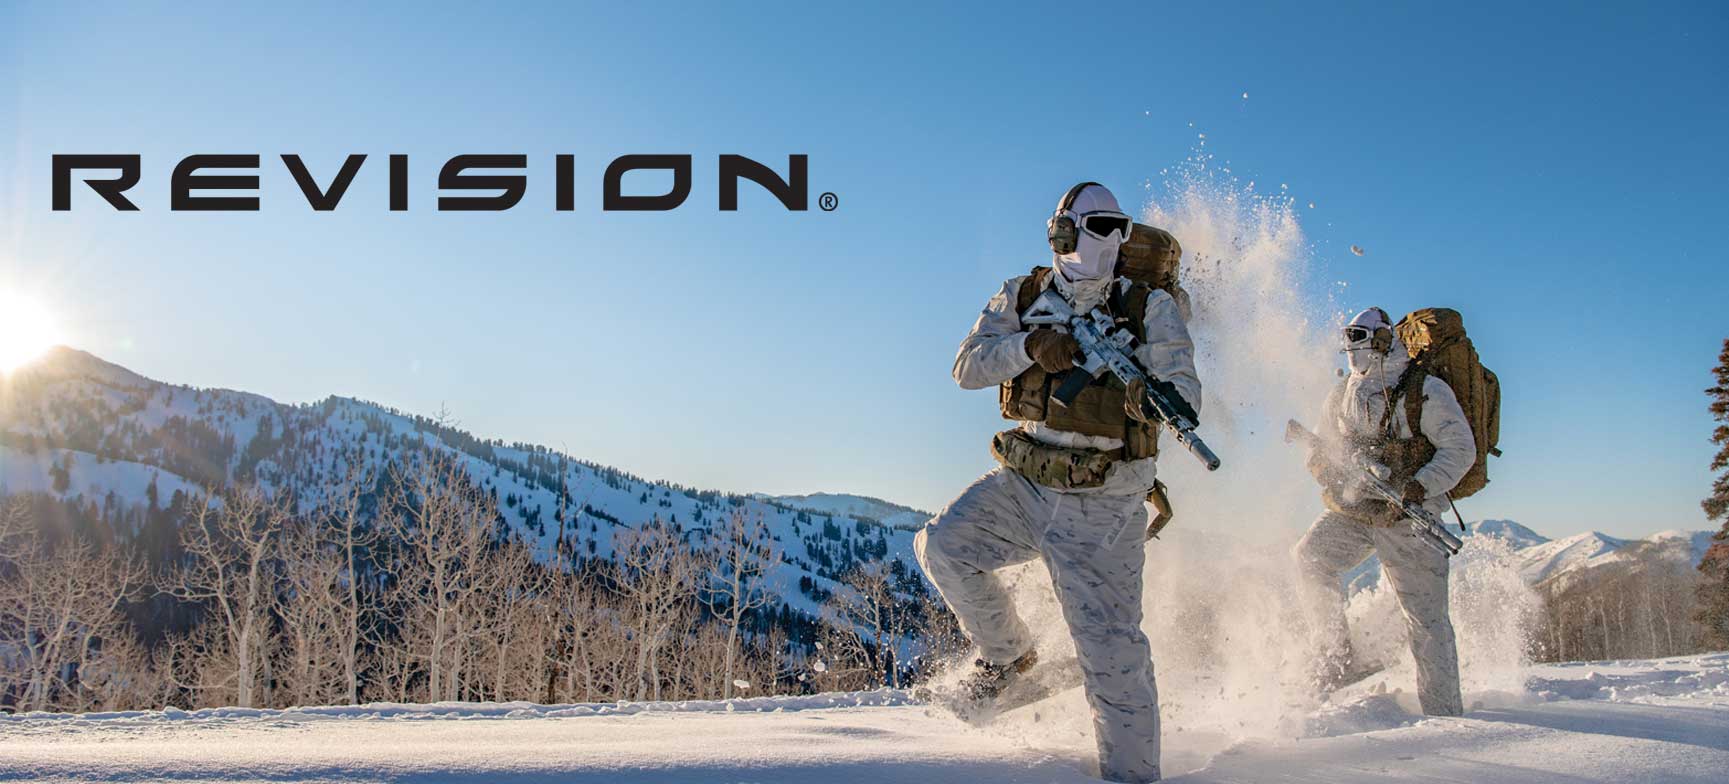 Image de militaires utilisant le masque balistique SnowHawk blanc dans la neige